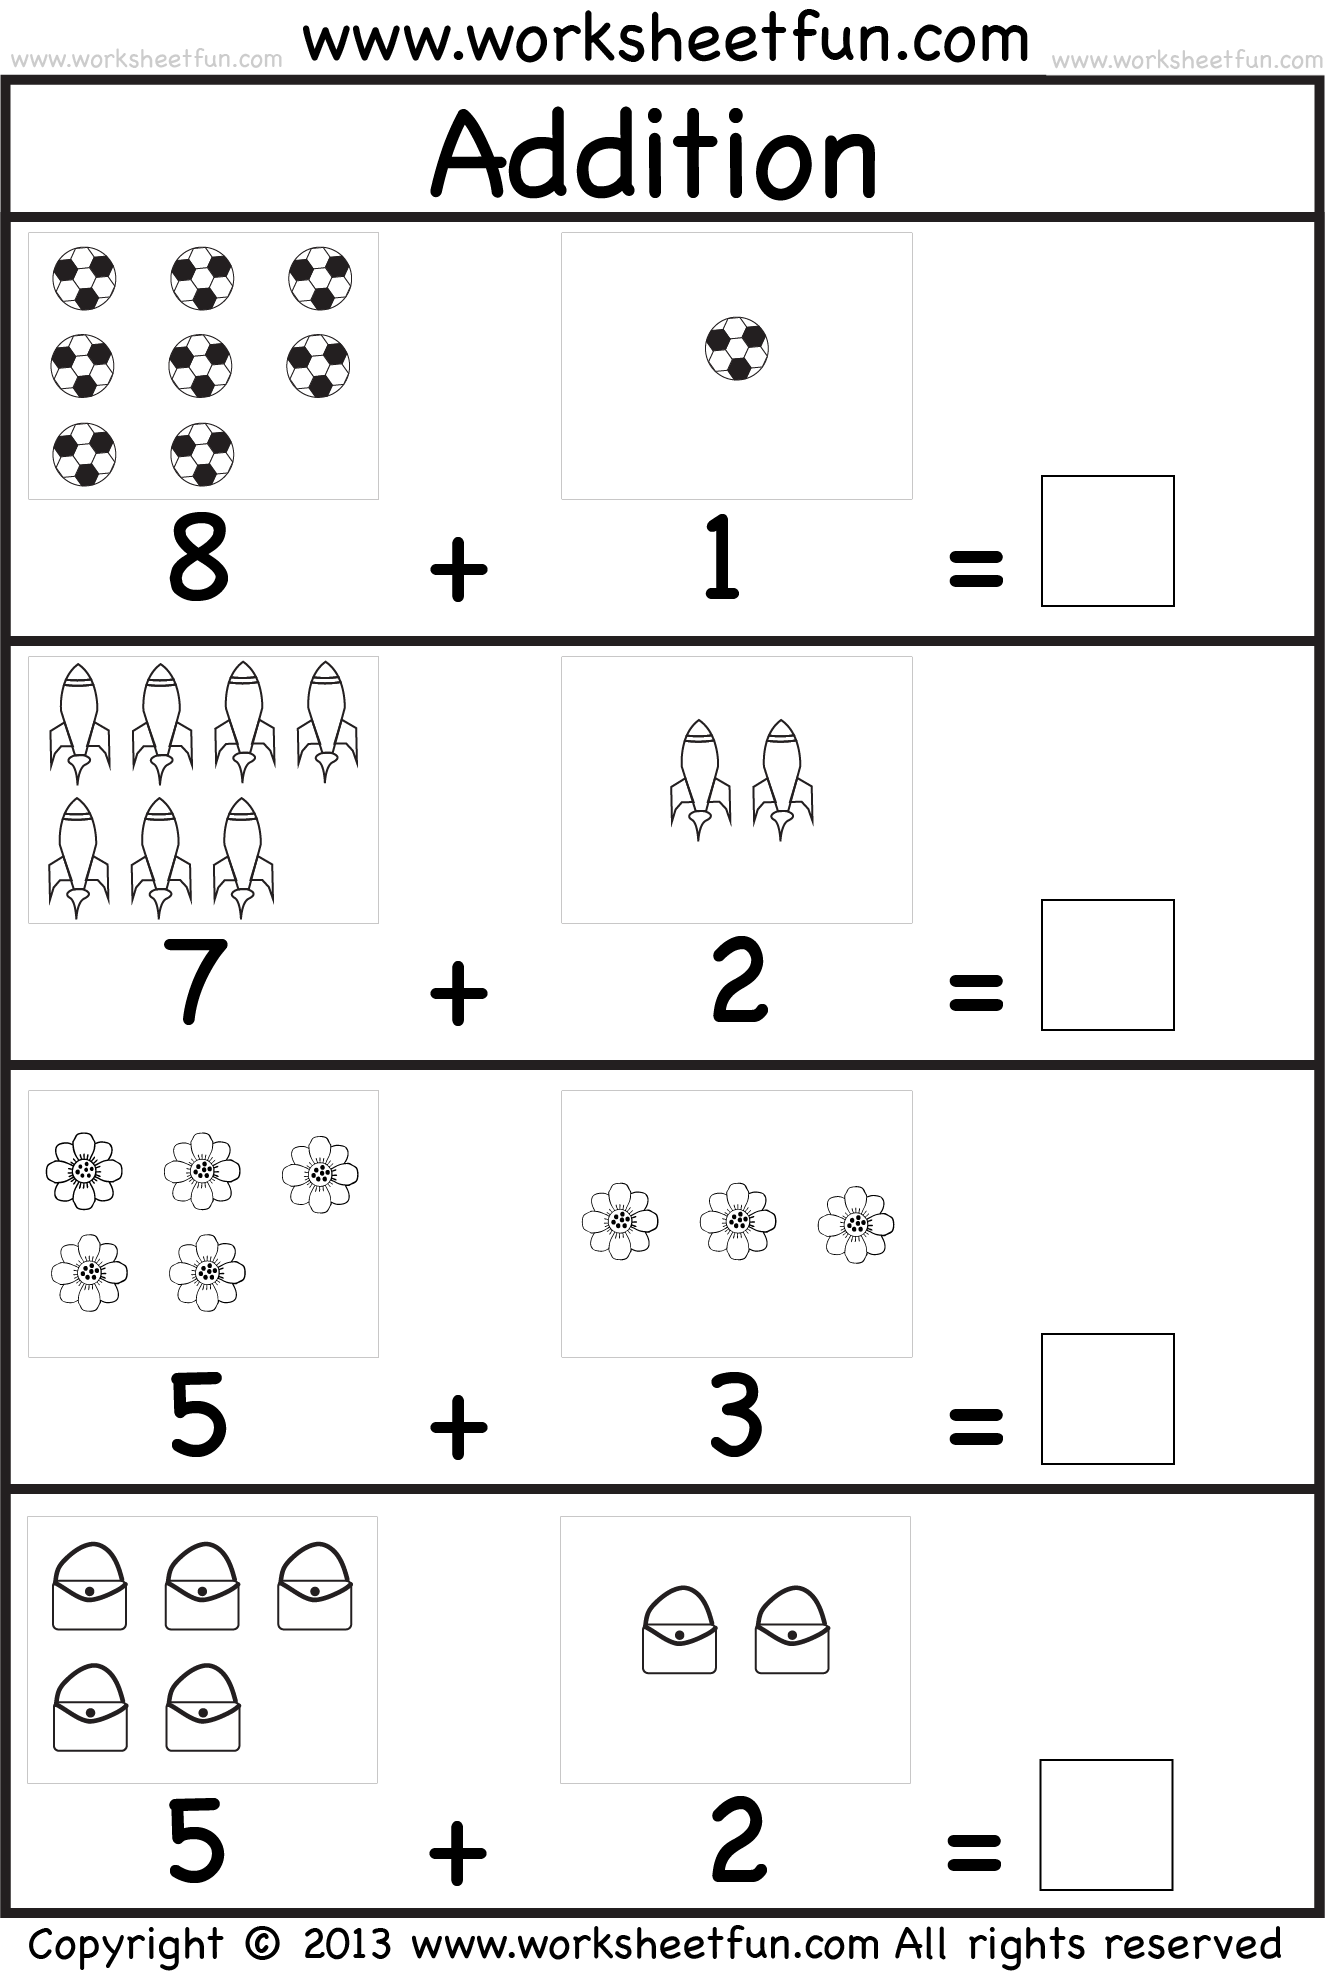 Free addition worksheets for kindergarten PDF